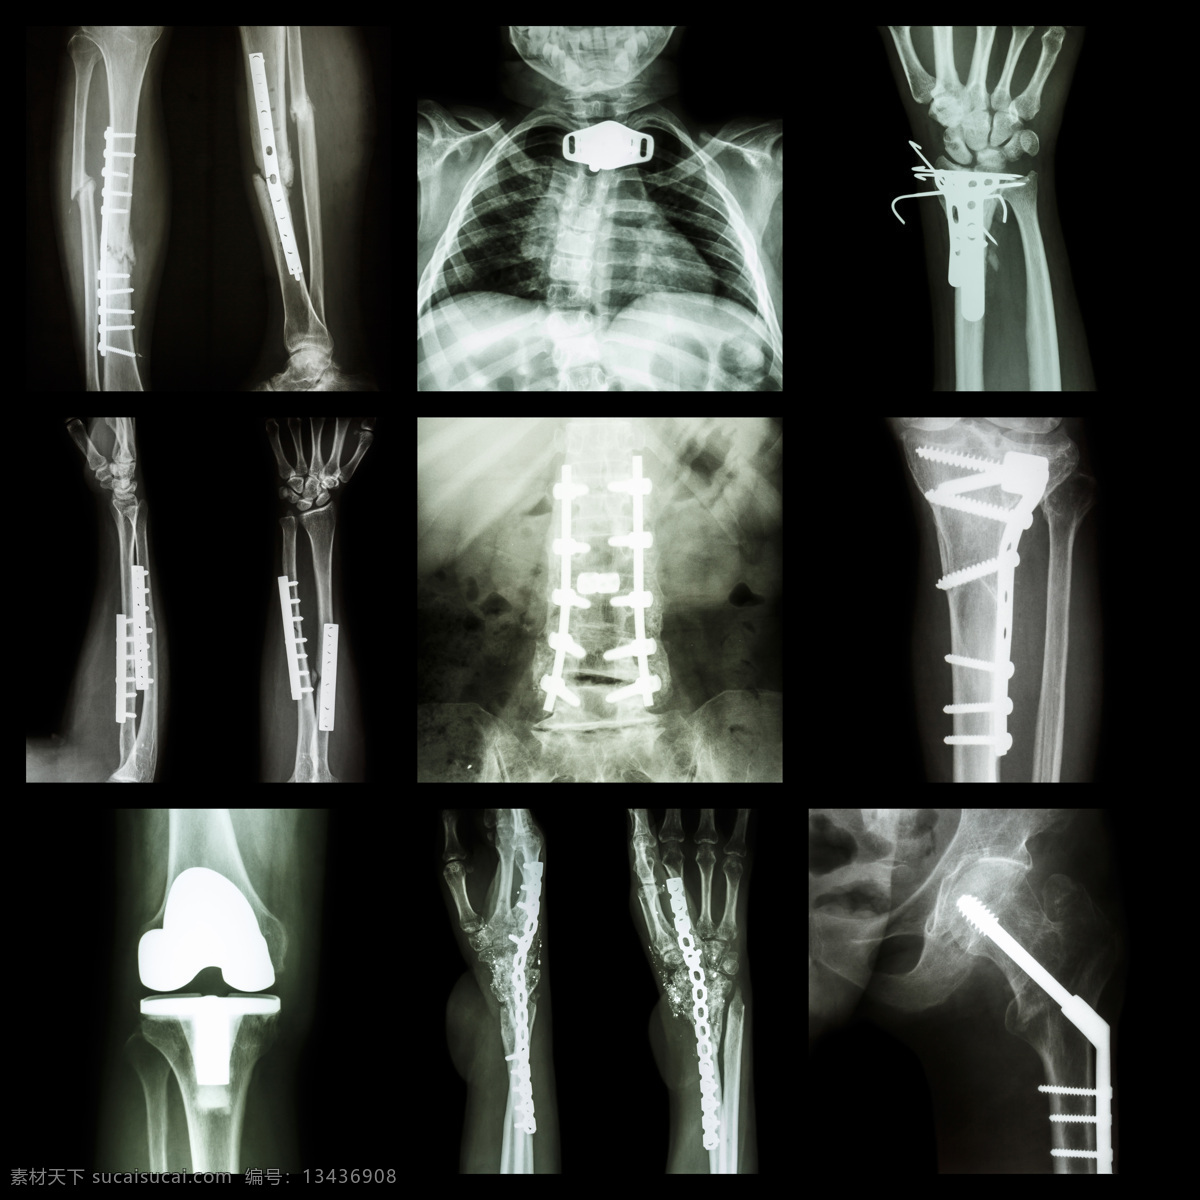 人体x光片 人体 x光 透视 医疗 ct x光片 核磁共振 医疗护理 现代科技